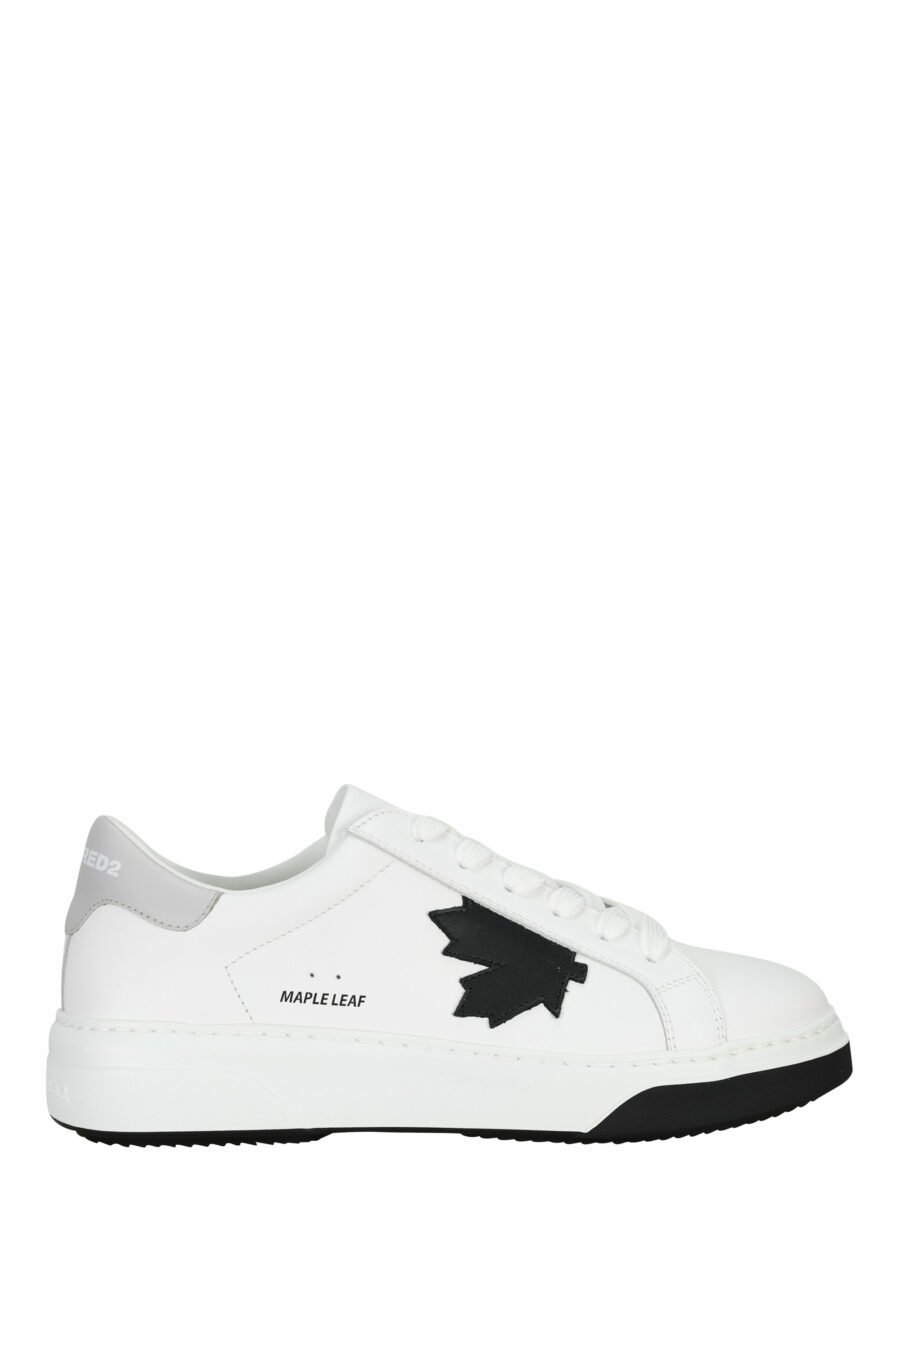 Zapatillas blancas con minilogo negro y suela bicolor - 805777319321